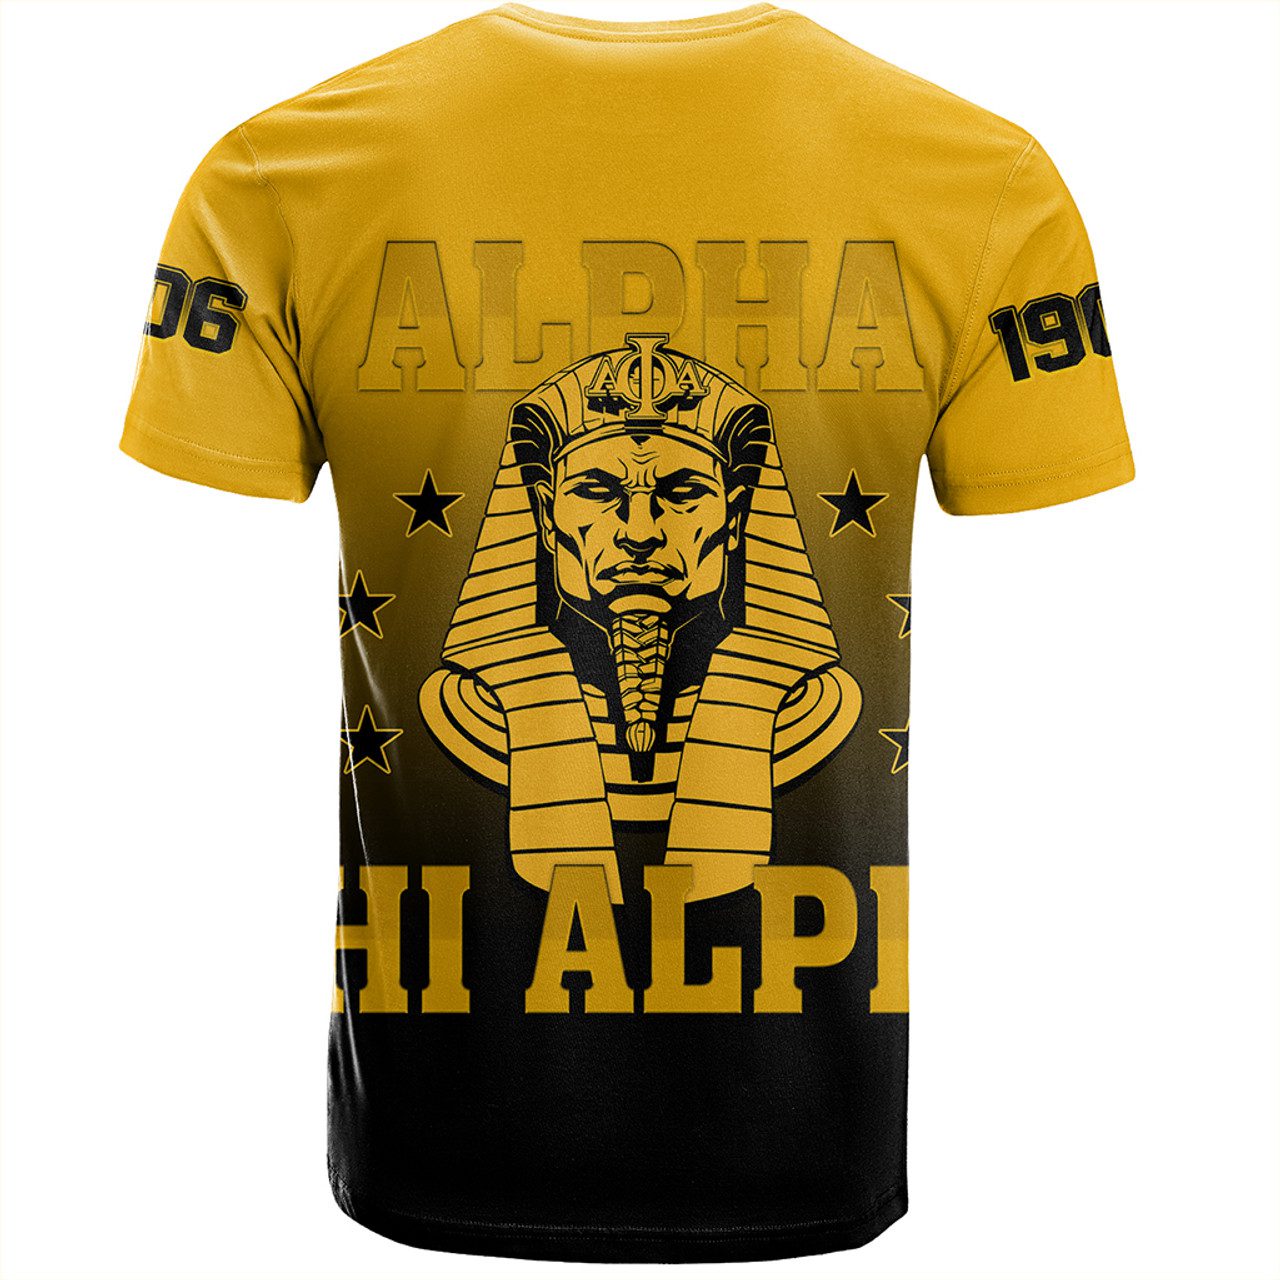 Alpha Phi Alpha T-Shirt Gradient